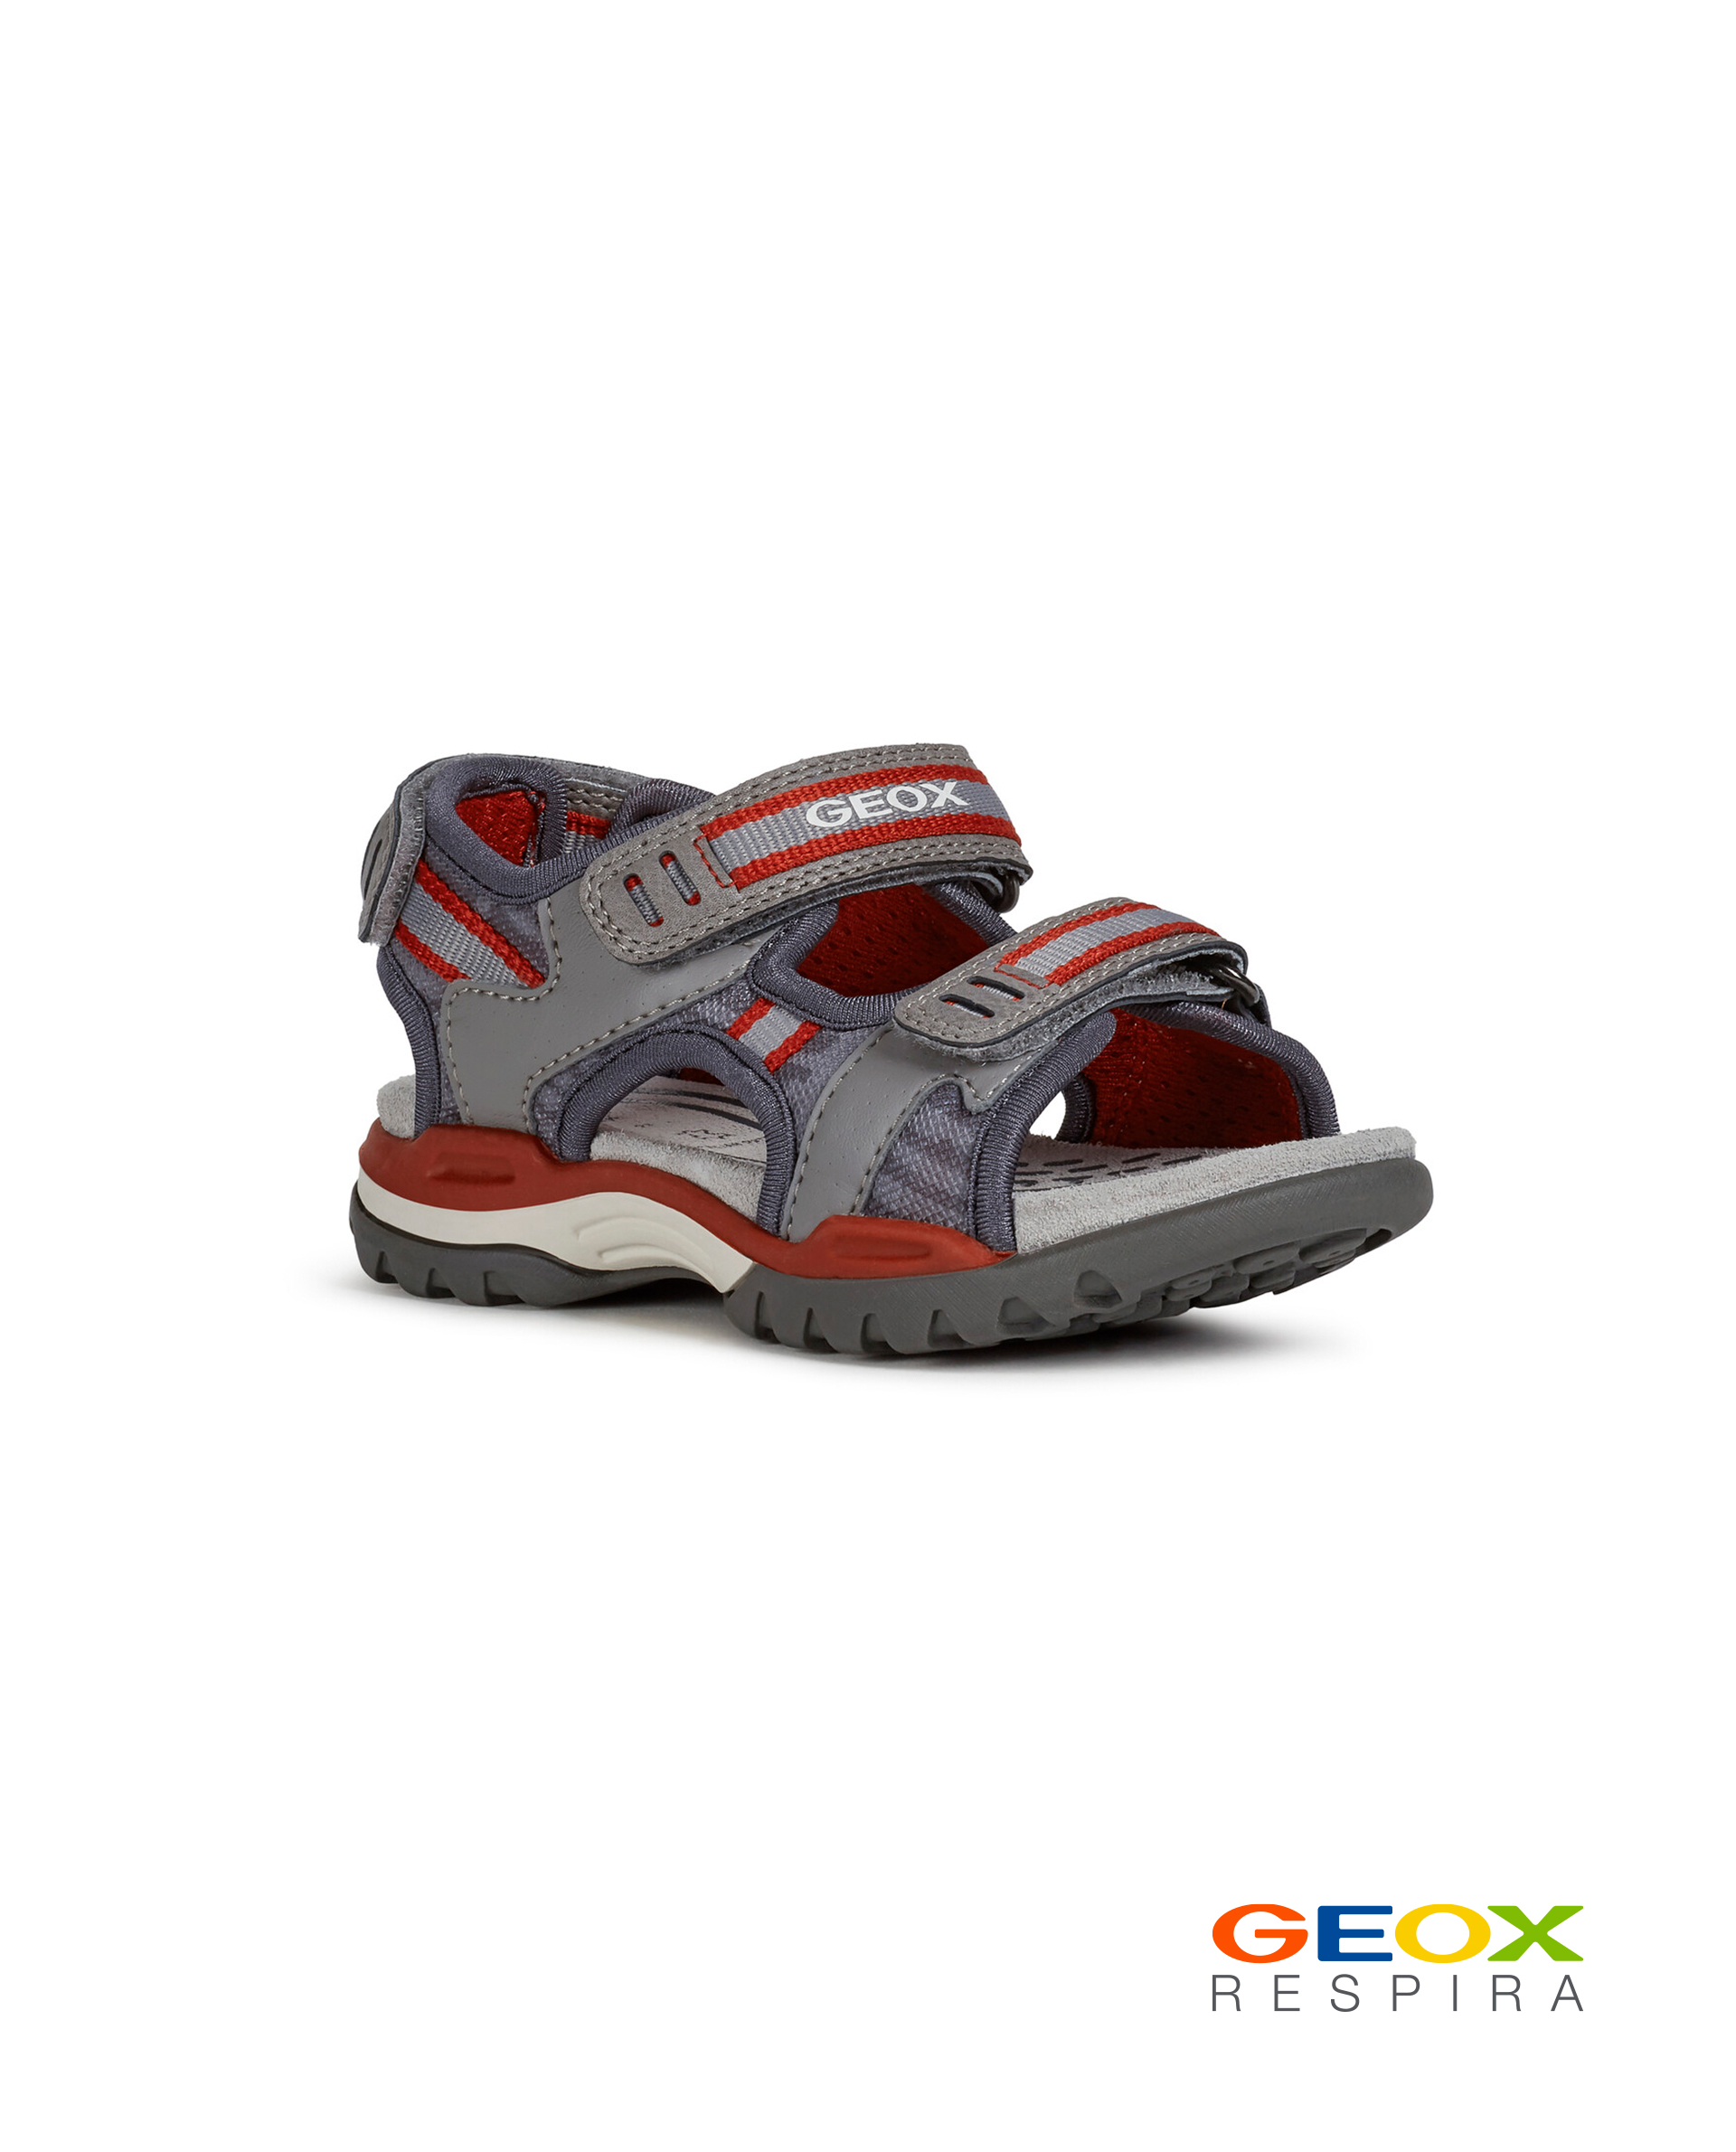 Серые сандалии Geox для мальчика J020RD014MEC0051, размер 32, цвет серый - фото 1